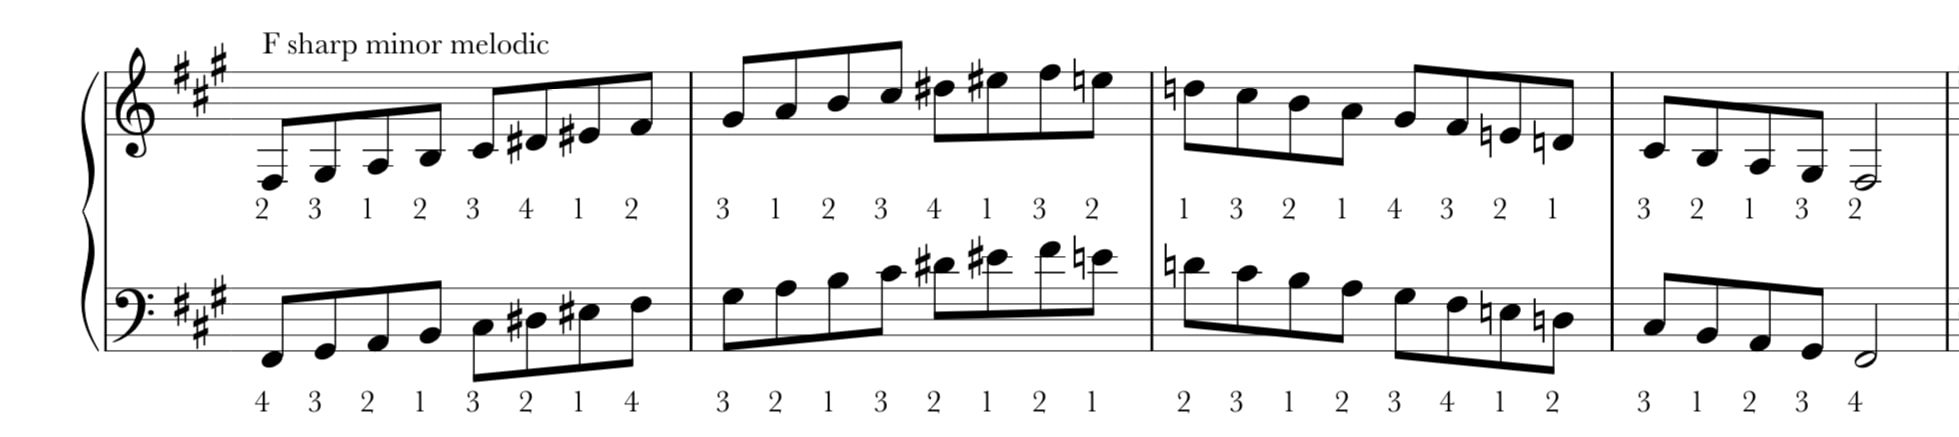 F sharp melodic minor scale